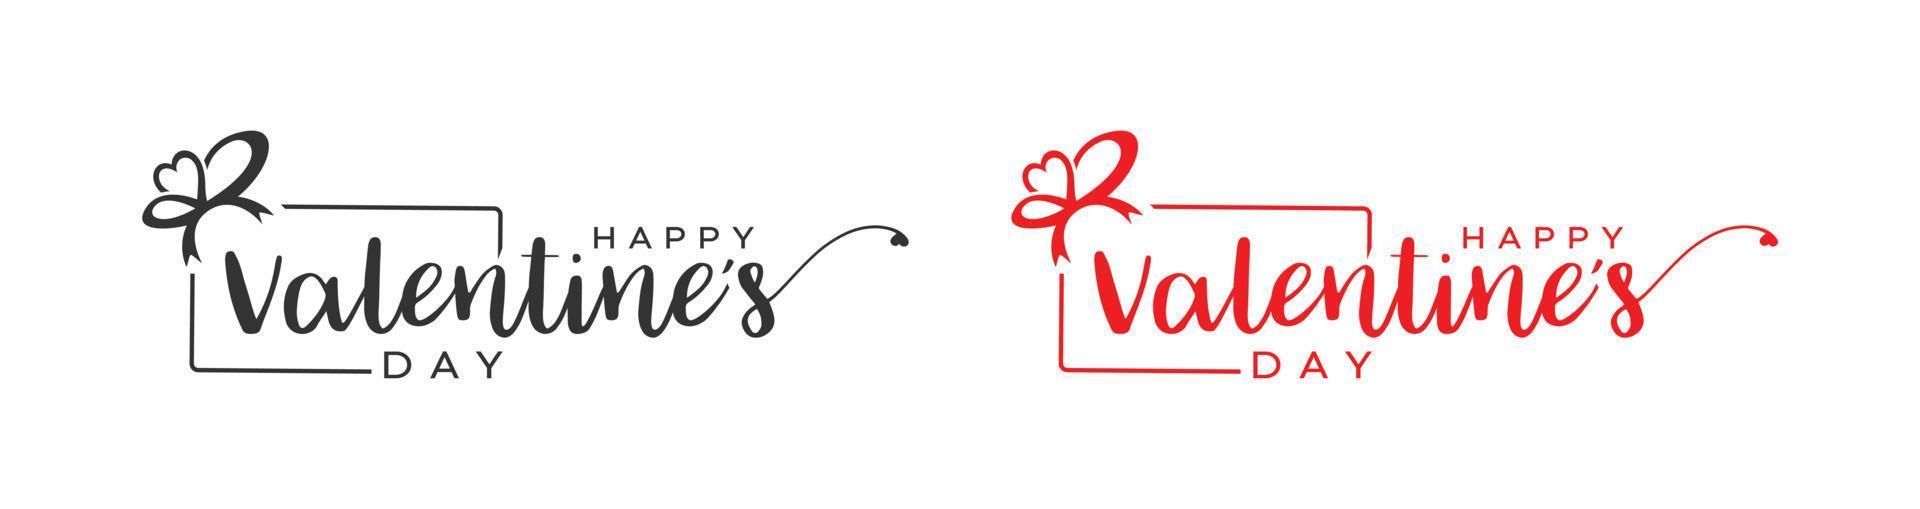 Me encanta el logotipo del día de San Valentín feliz, San Valentín feliz con caja de regalo, diseño del logotipo del vector de regalo de San Valentín.